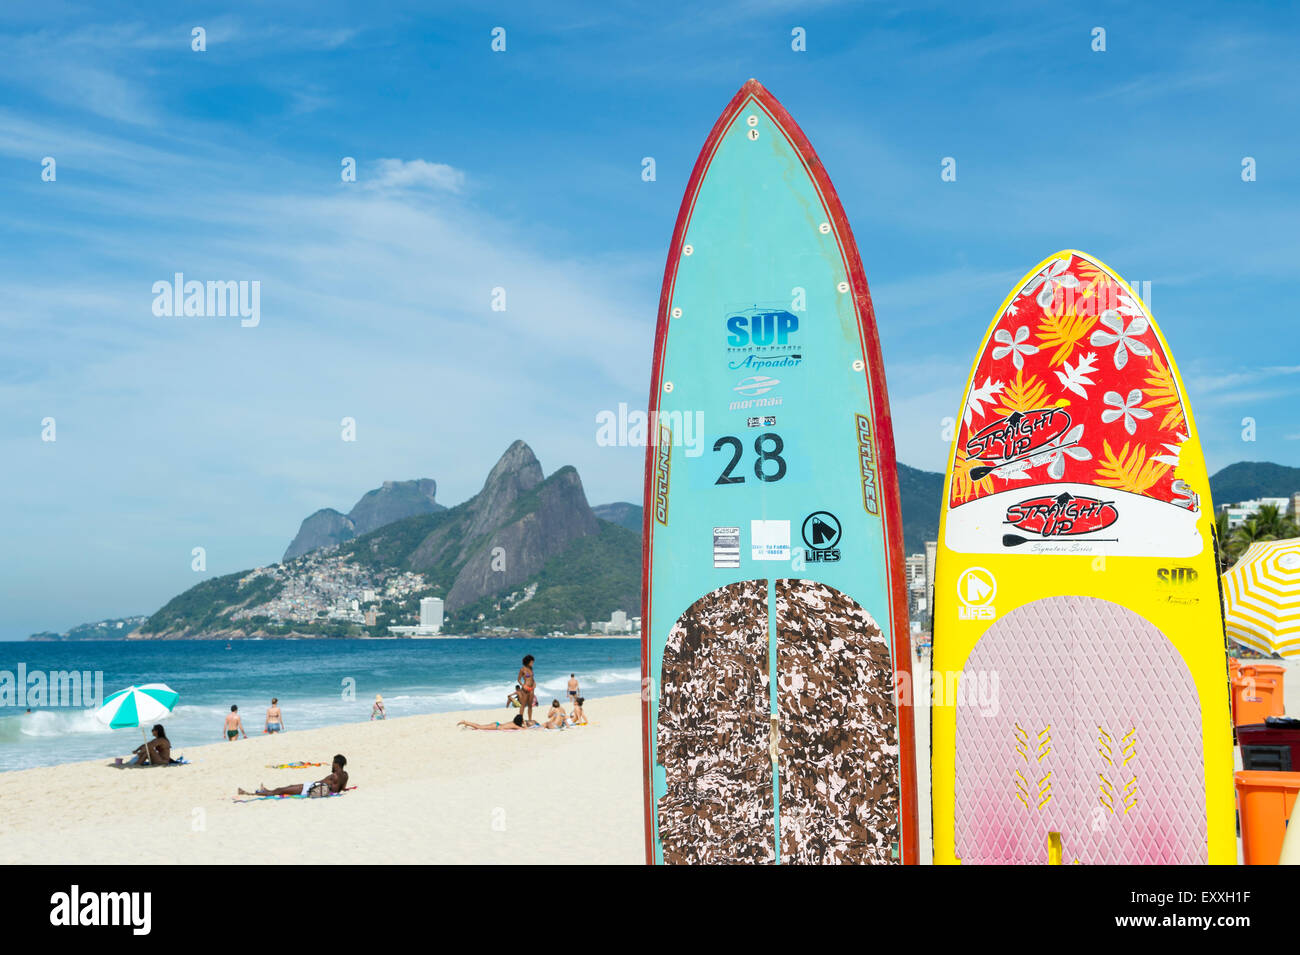 RIO DE JANEIRO, Brasilien - 22. März 2015: Bunte Stand-up Paddle Surfboards stehen aufgereiht am Strand von Arpoador. Stockfoto